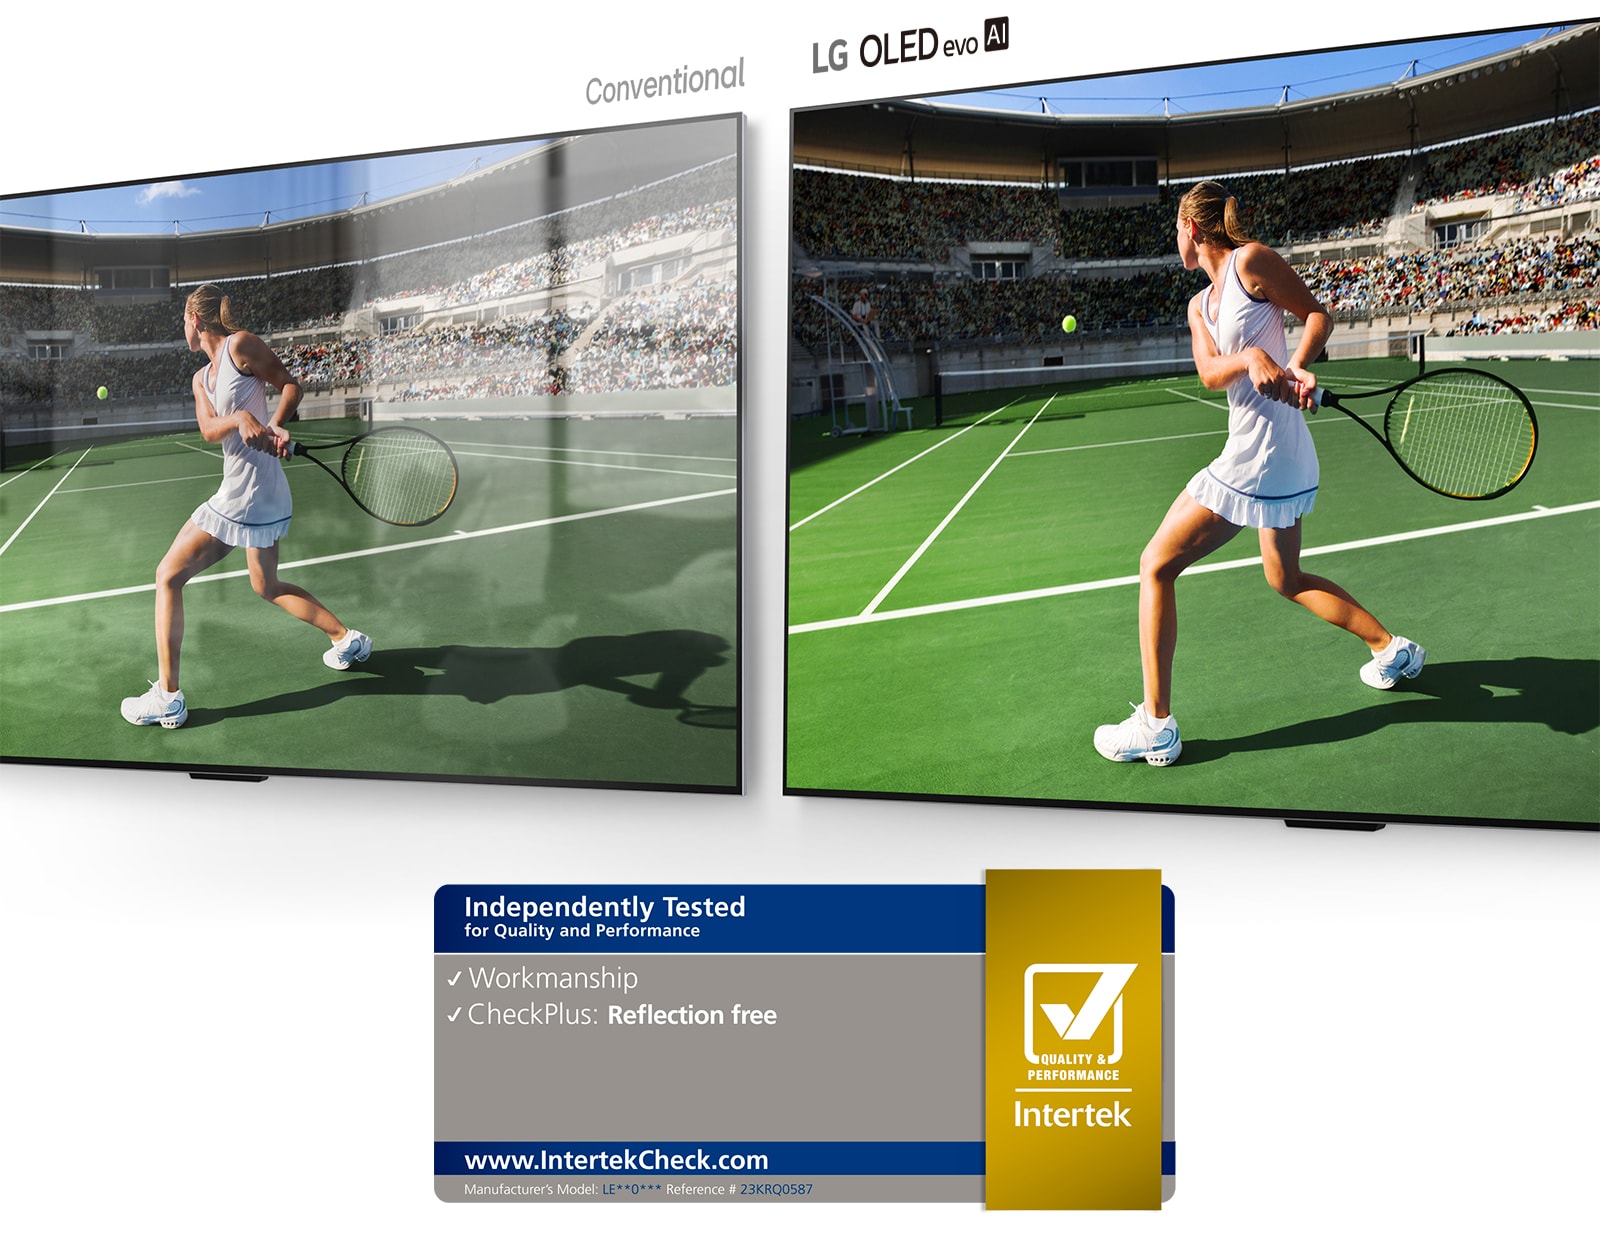 Kreisajā pusē parasts TV, kurā redzams tenisists stadionā ar telpas atspoguļojumu ekrānā. Labajā pusē LG OLED evo AI G4 parāda tādu pašu tenisa spēlētāja attēlu stadionā bez telpas atstarošanas, un attēls izskatās gaišāks un krāsaināks.